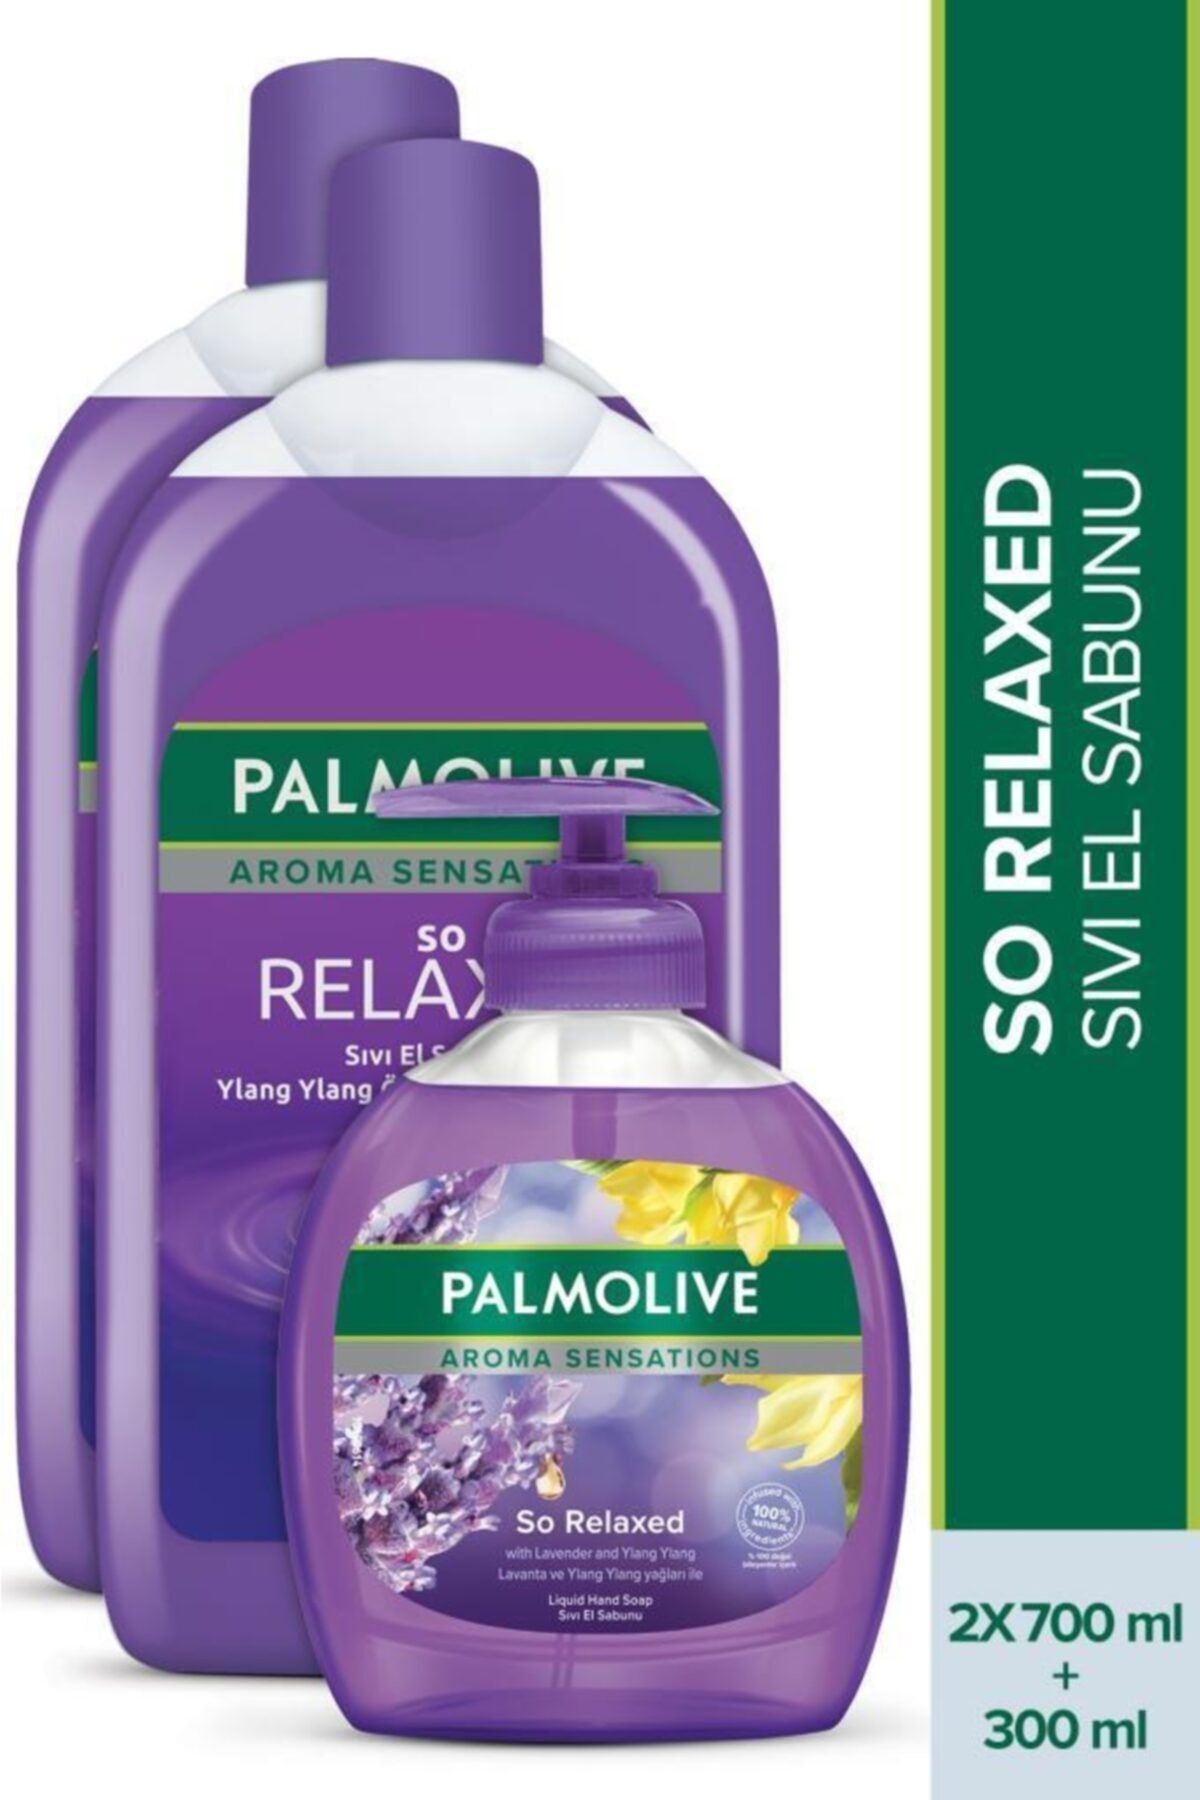 Palmolive Aroma Sensations So Relaxed İris Özü ile Sıvı El Sabunu 300 ml + 700 ml + 700 ml